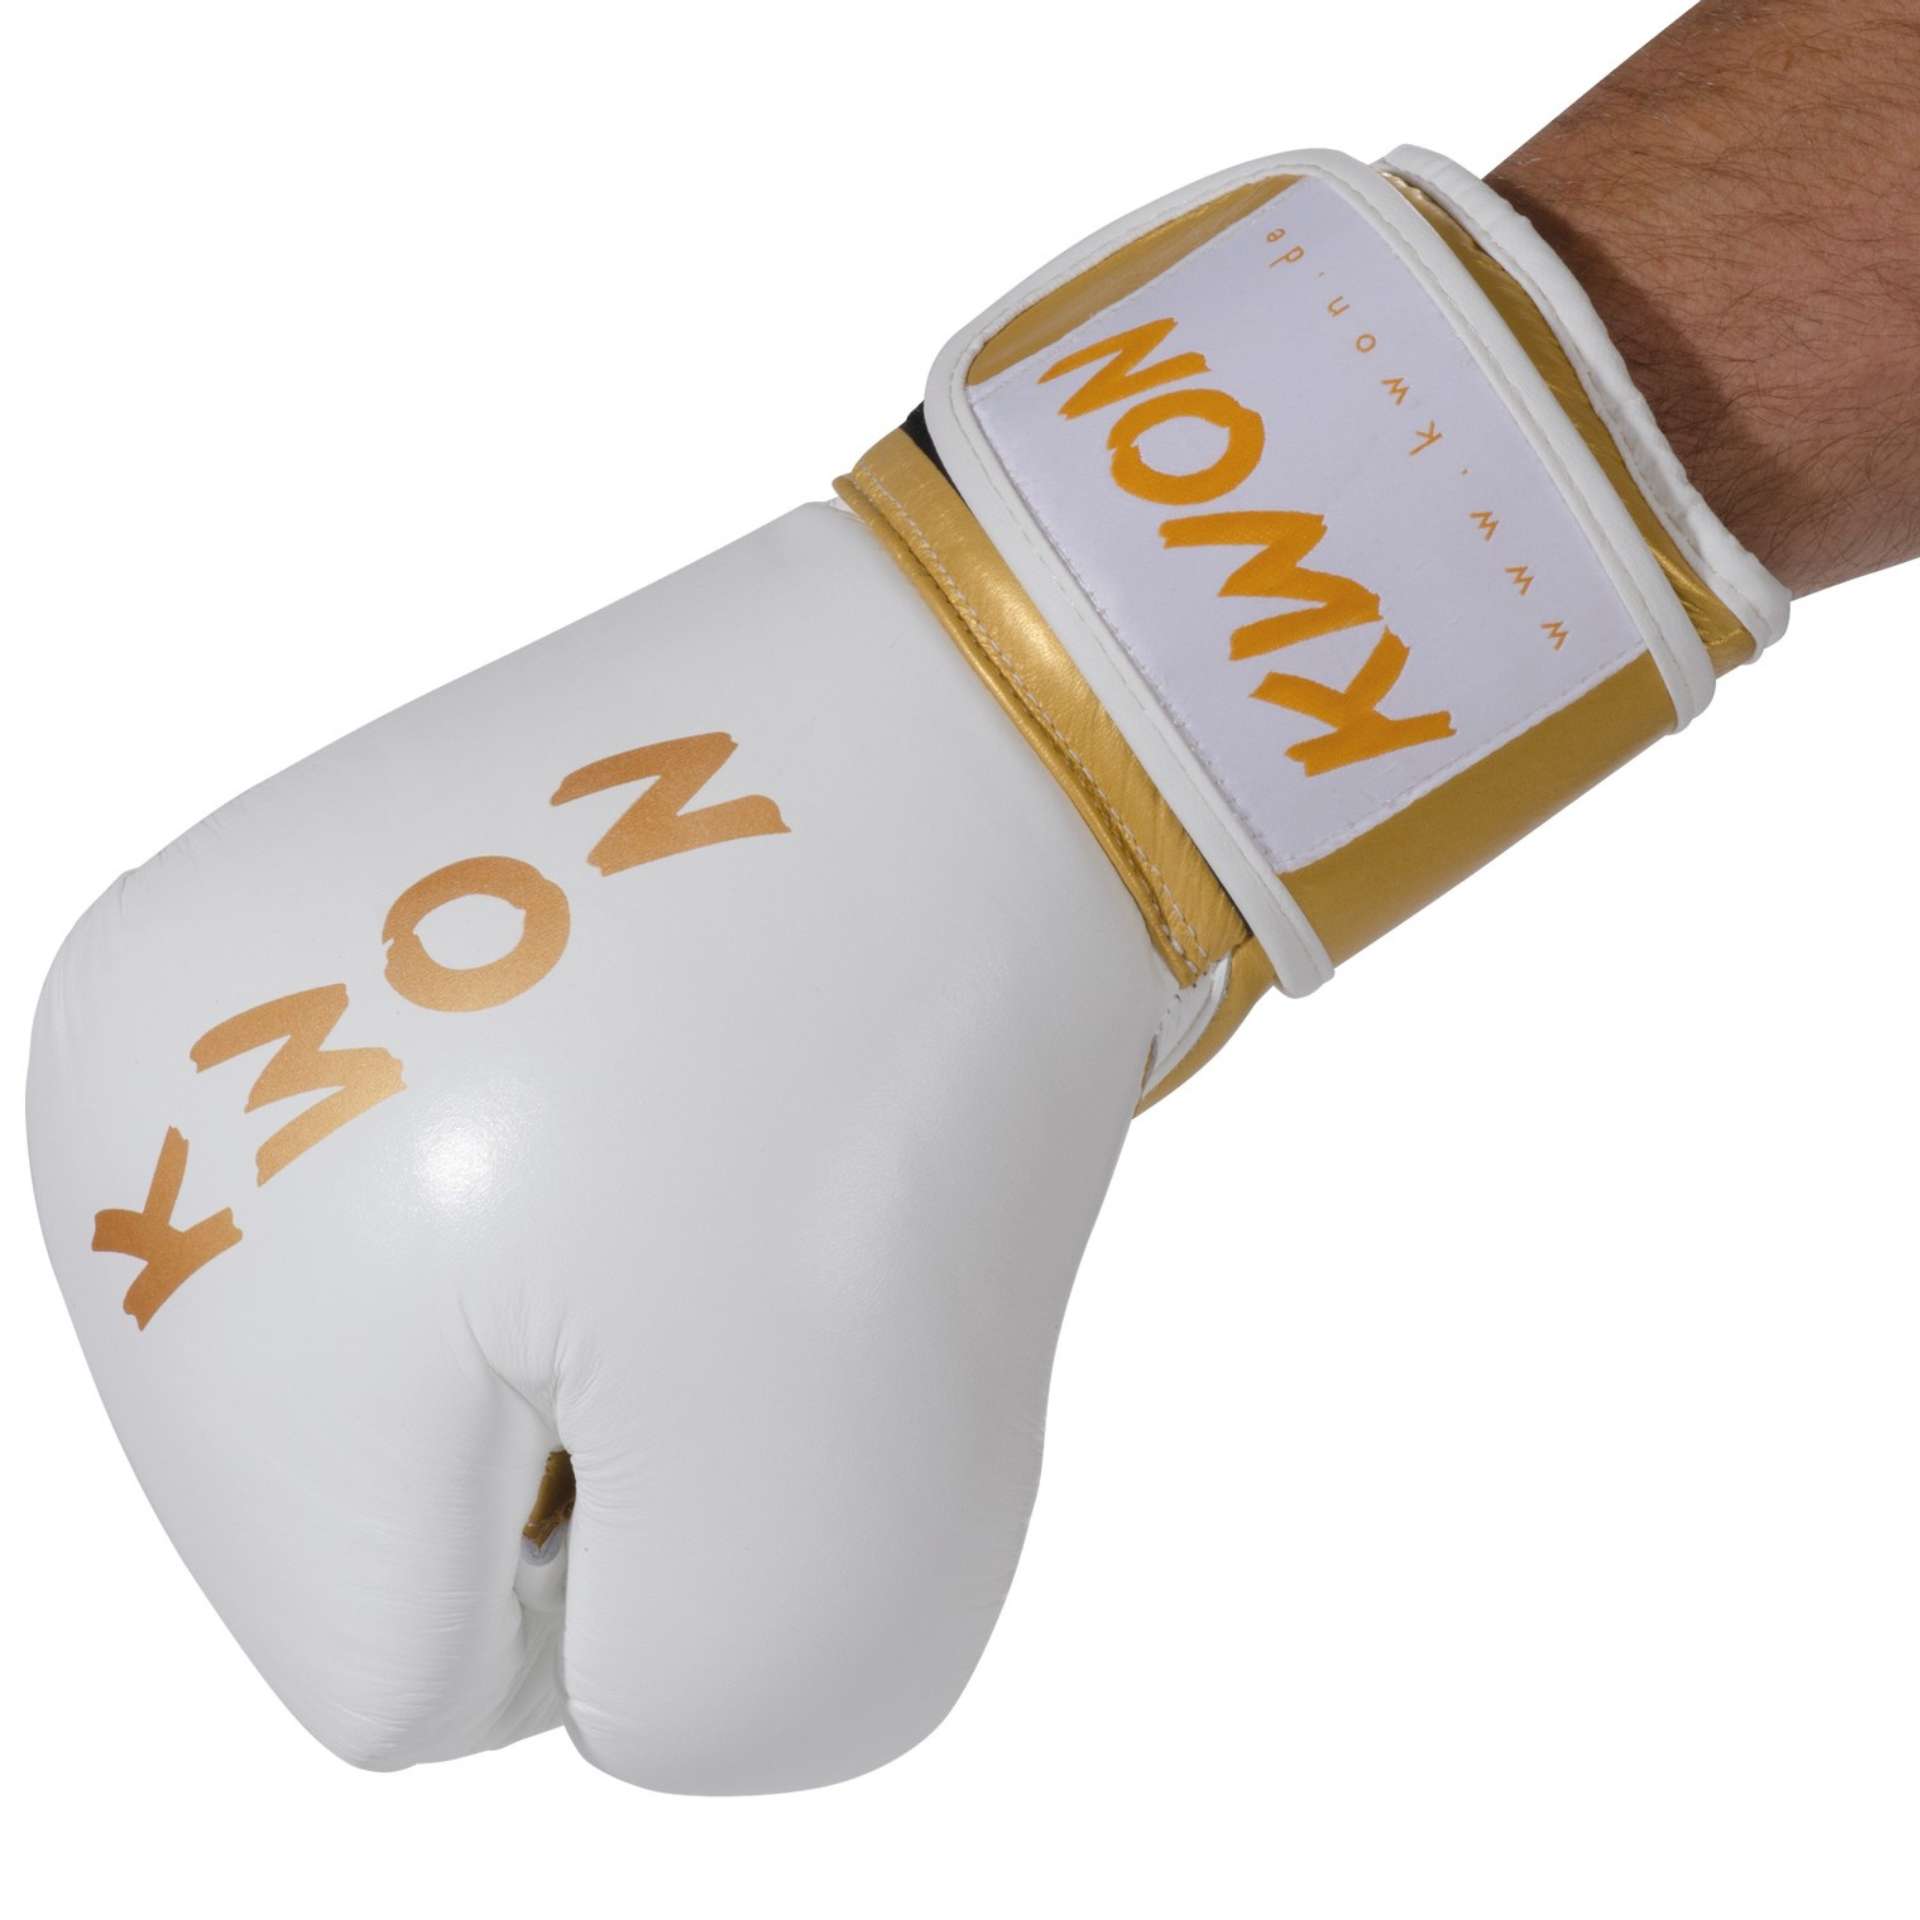 KO Champ Boxhandschuhe - WKU anerkannt